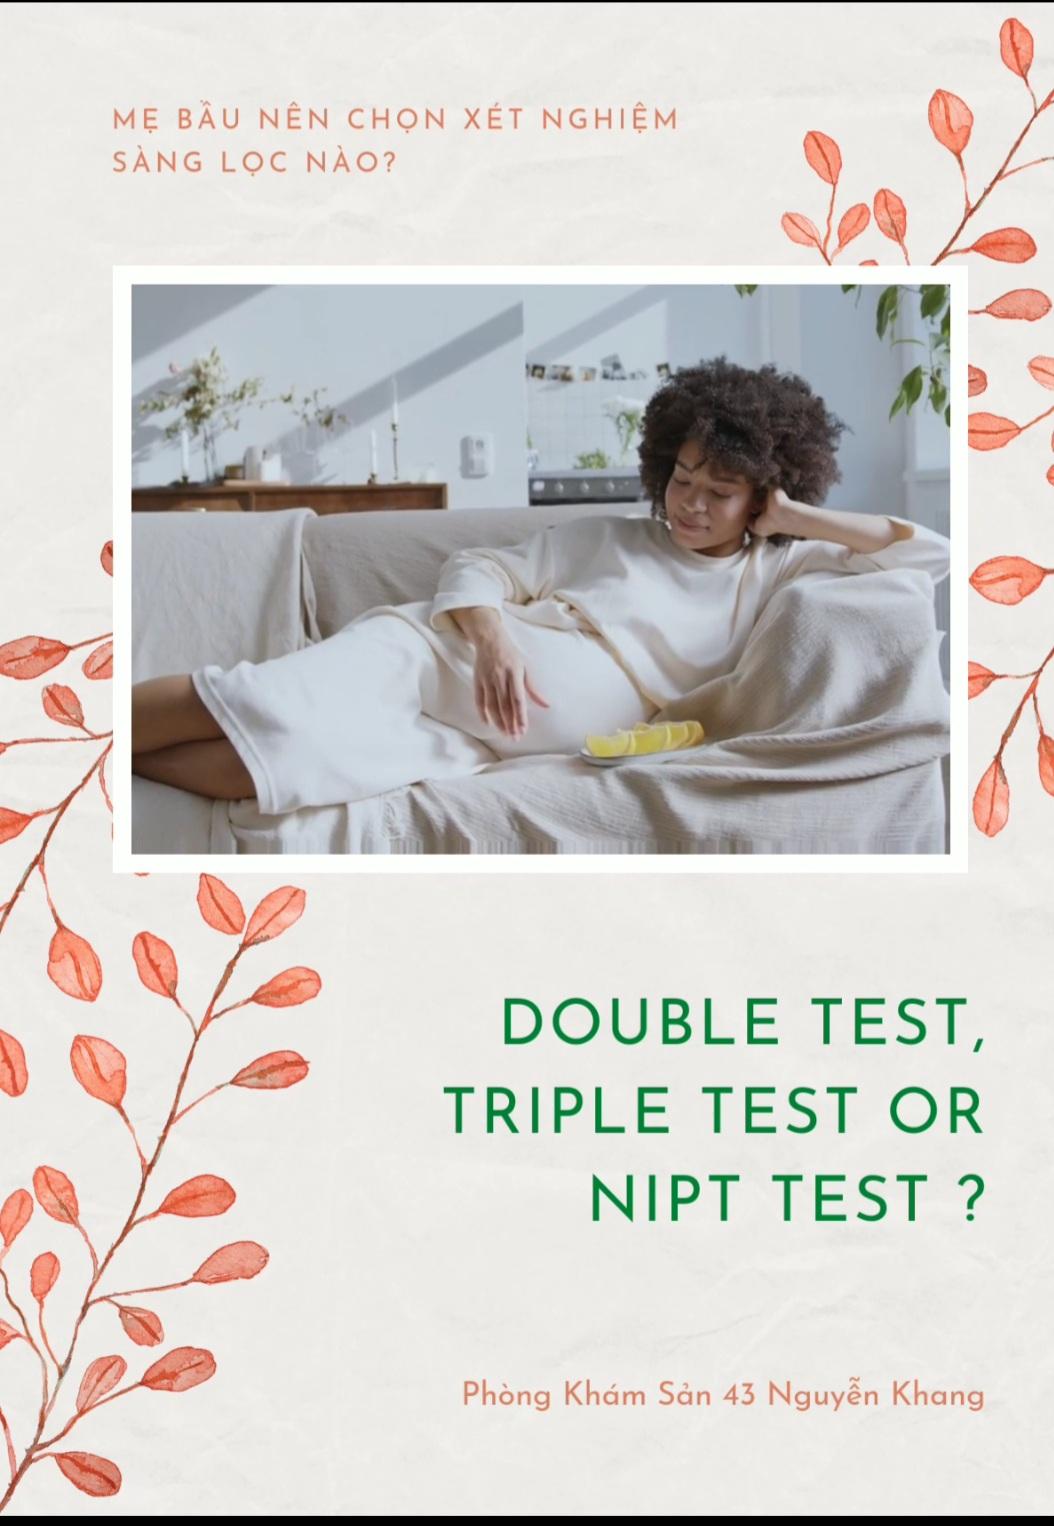 Các xét nghiệm Double test, Triple test, Nipt thì nên chọn loại nào?